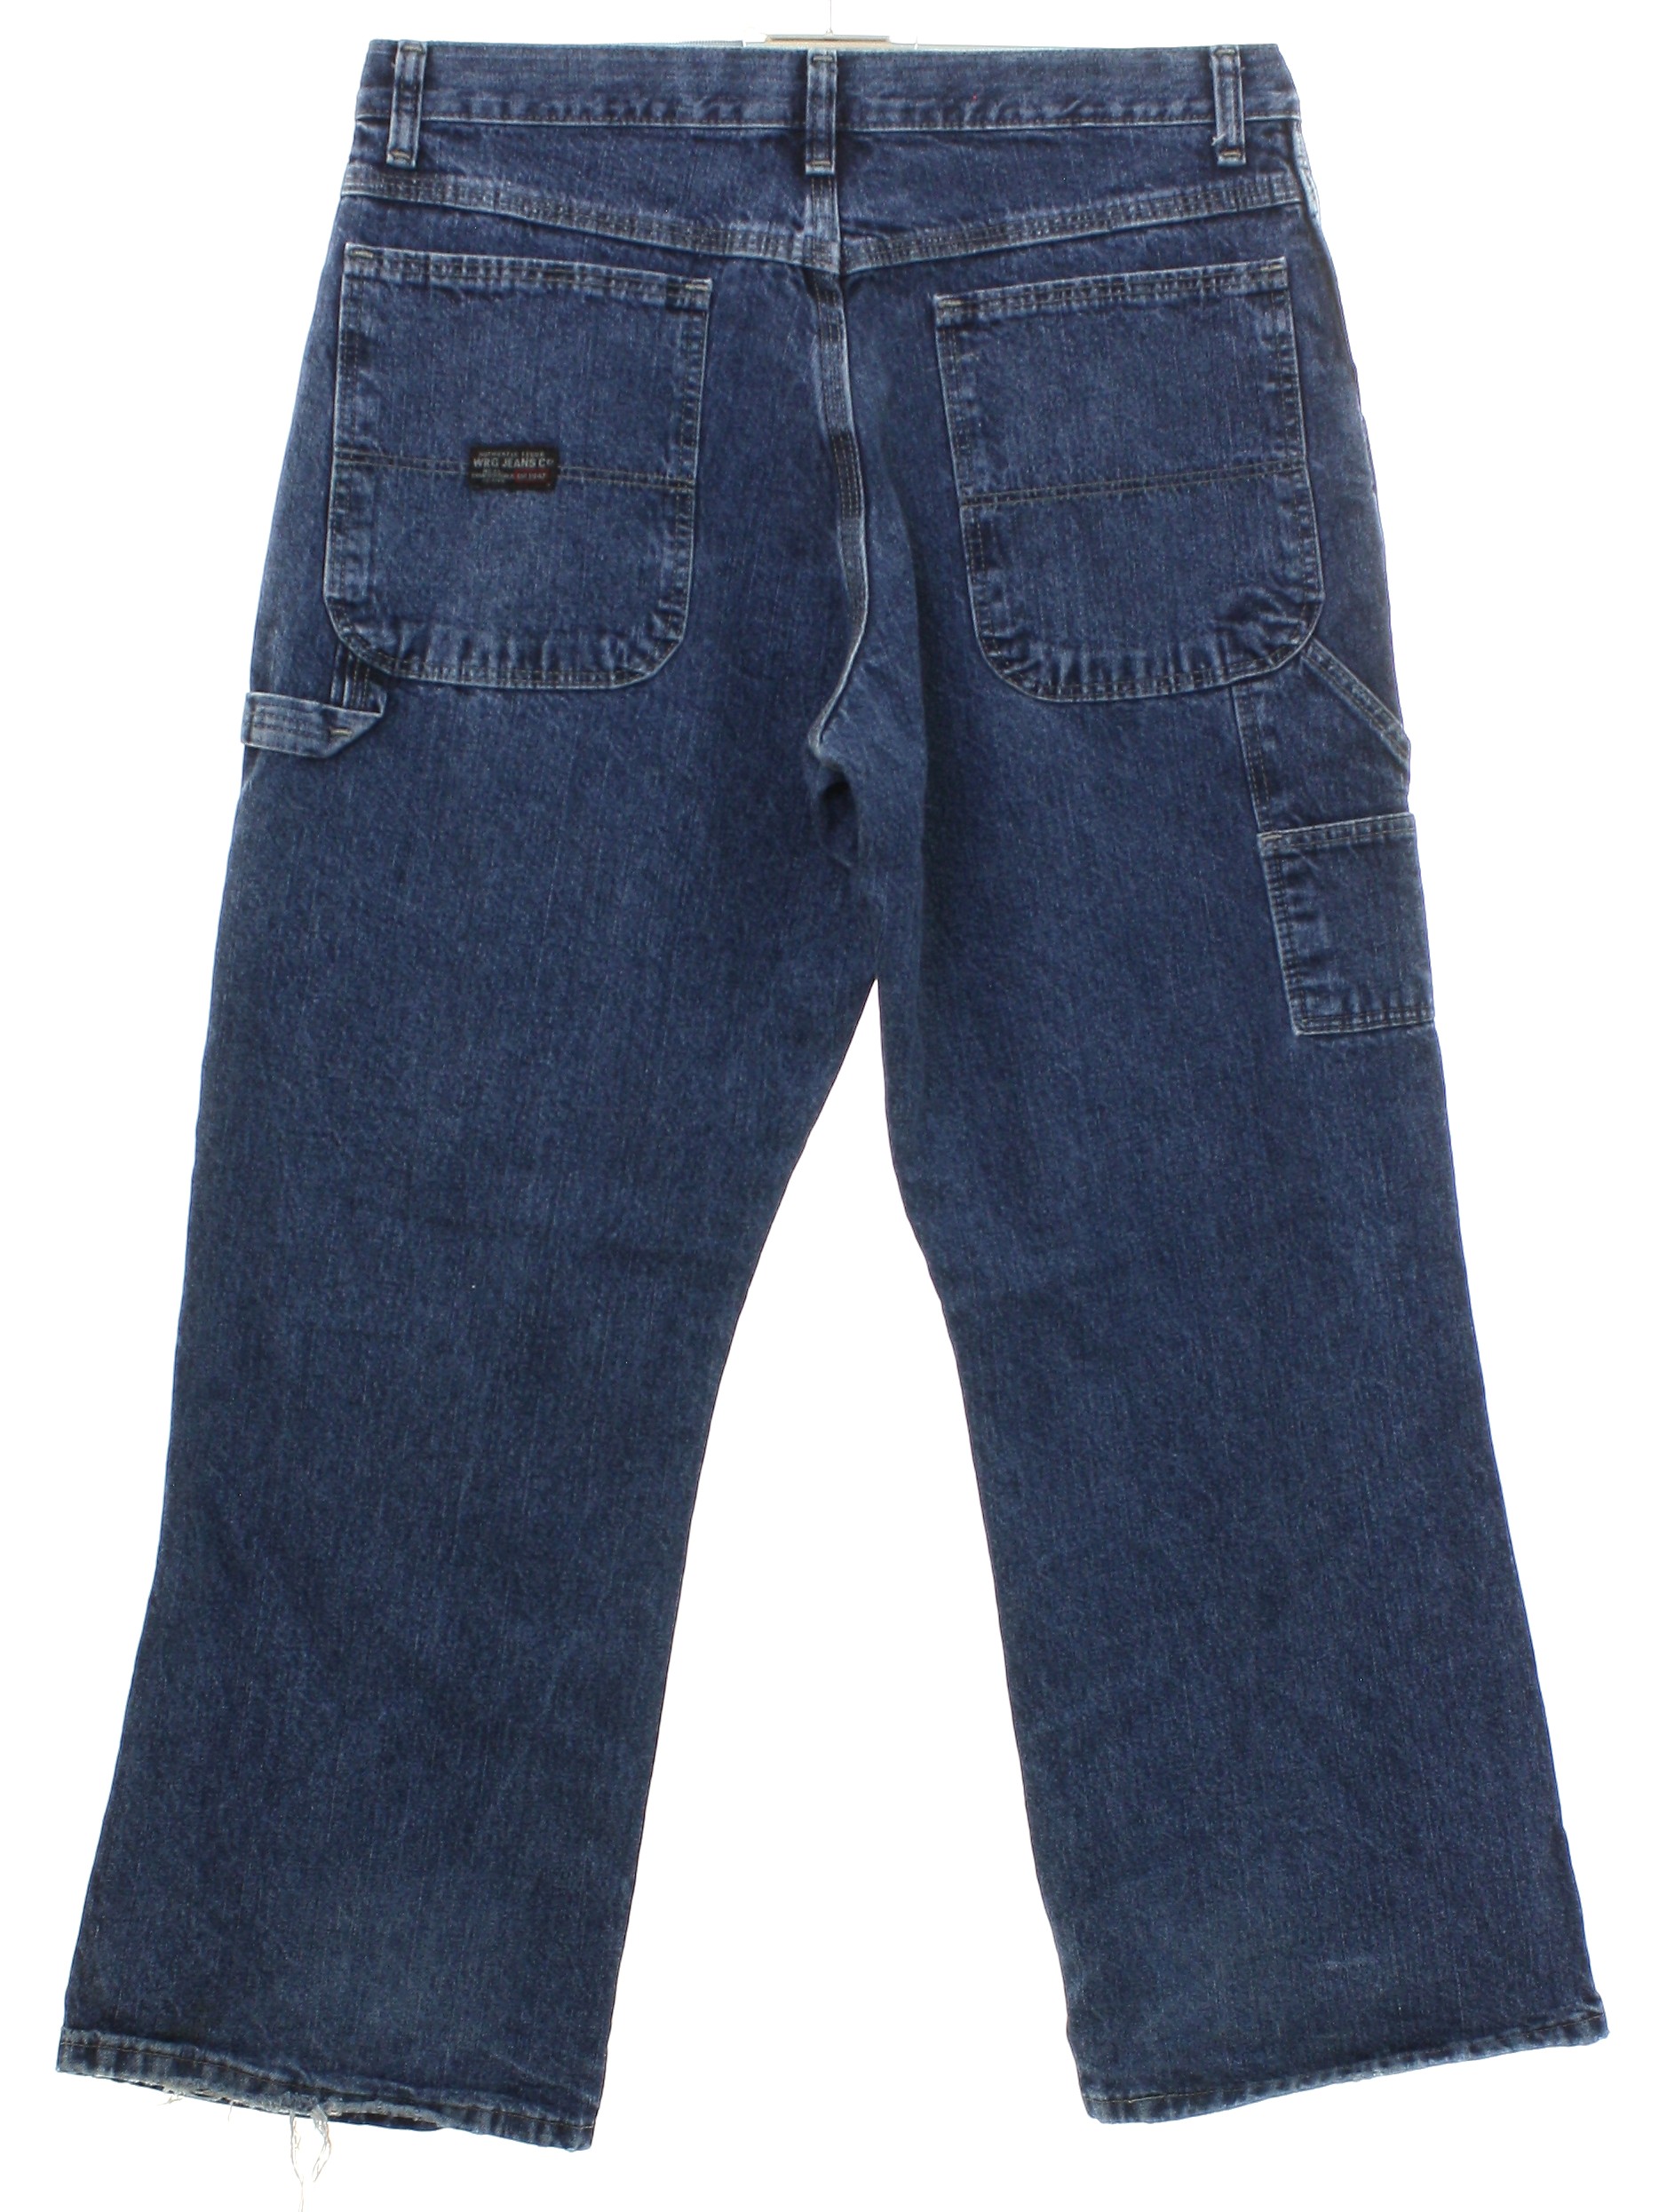 WRG Jeans Com Nineties Vintage Pants: 90s or newer -WRG Jeans Com- Mens ...